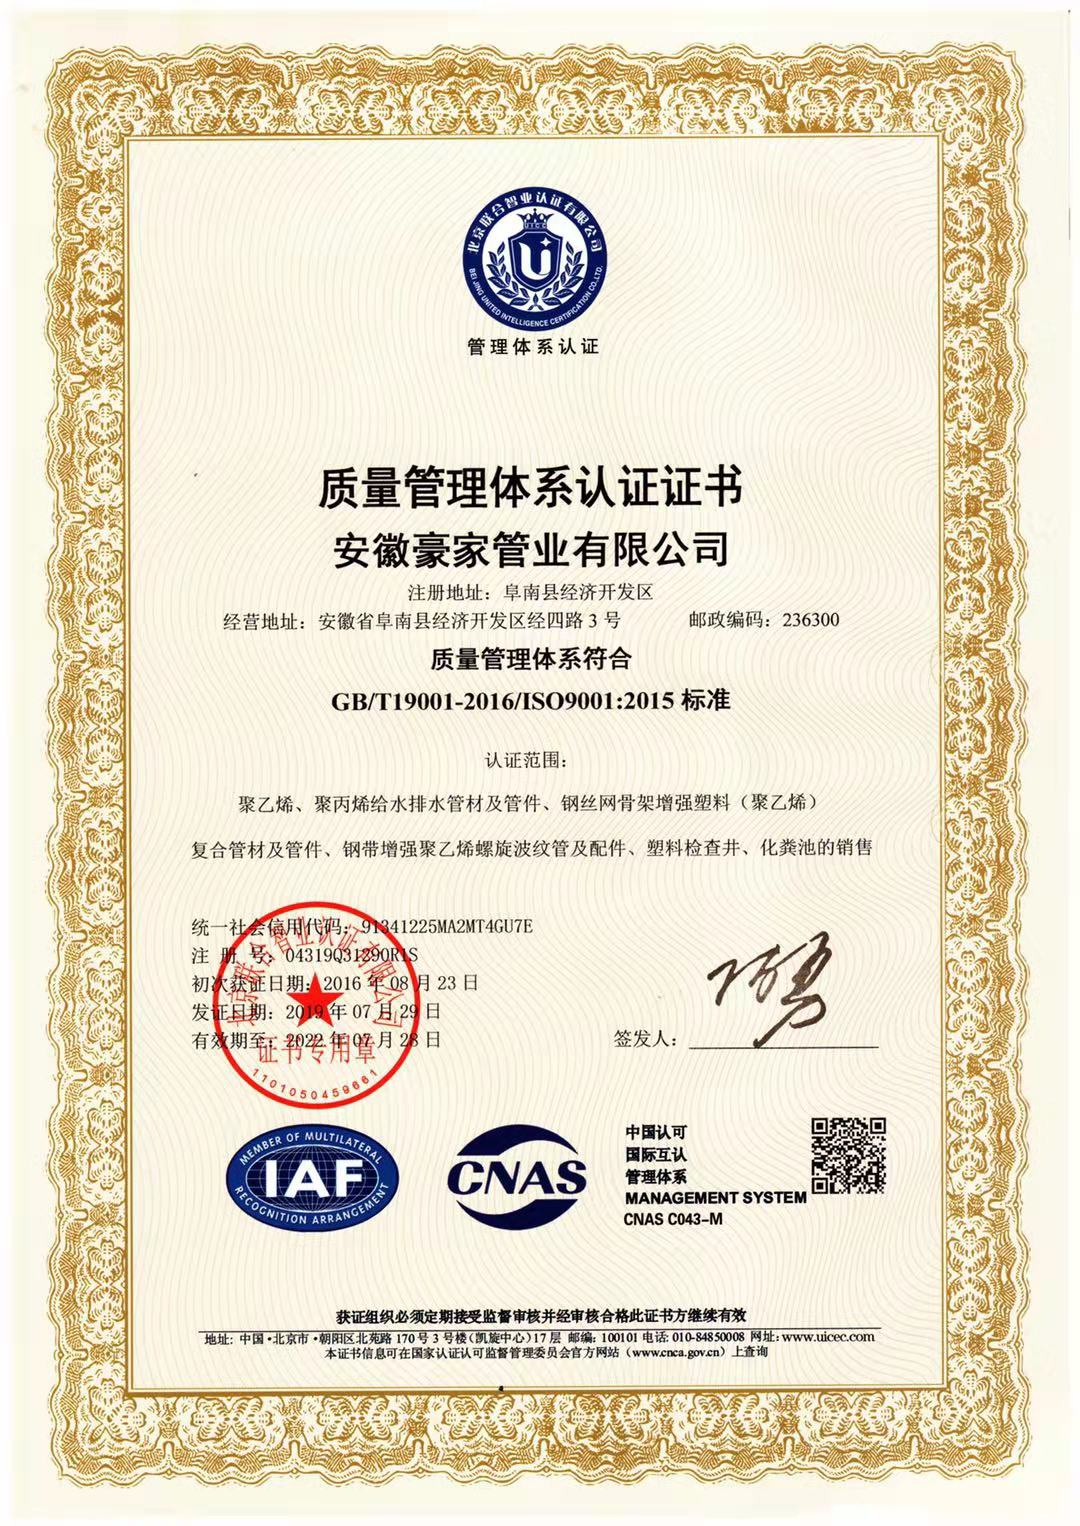 
荣获《质量管理体系认证证书》